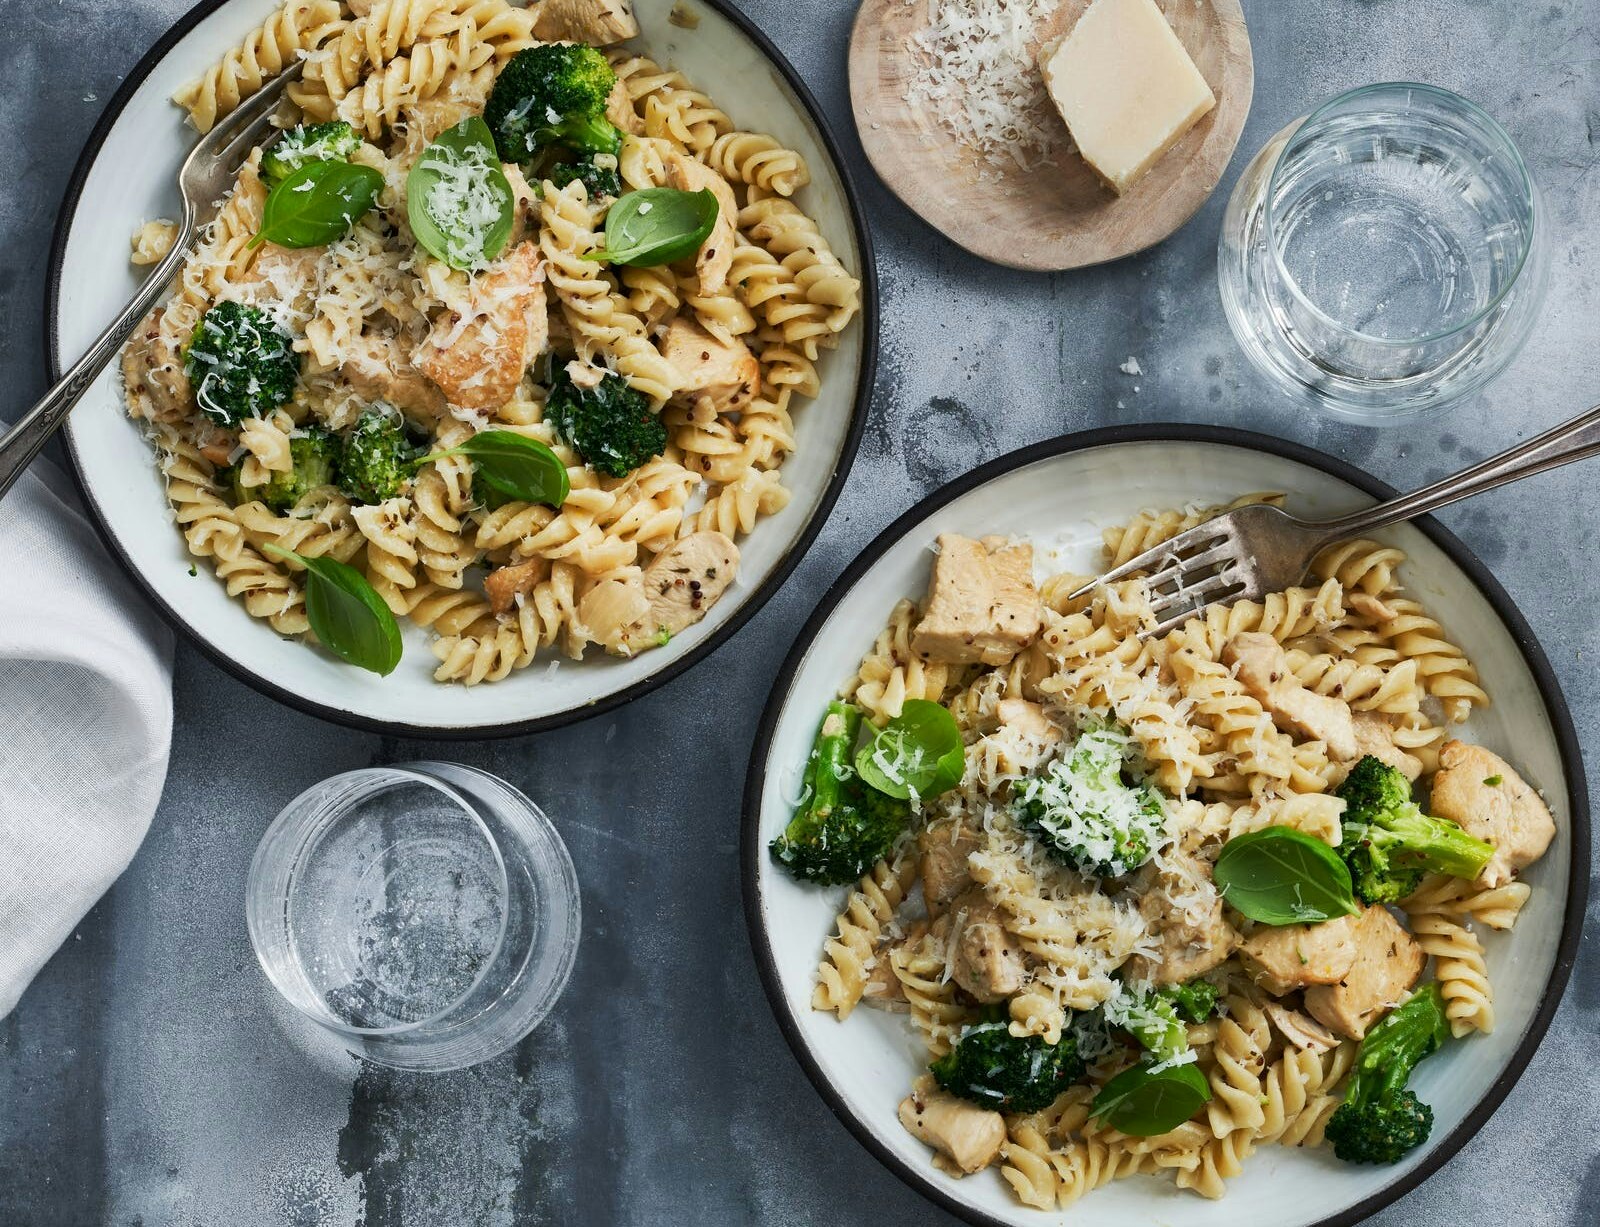 Kylling i mild sennepssauce med pasta og broccoli